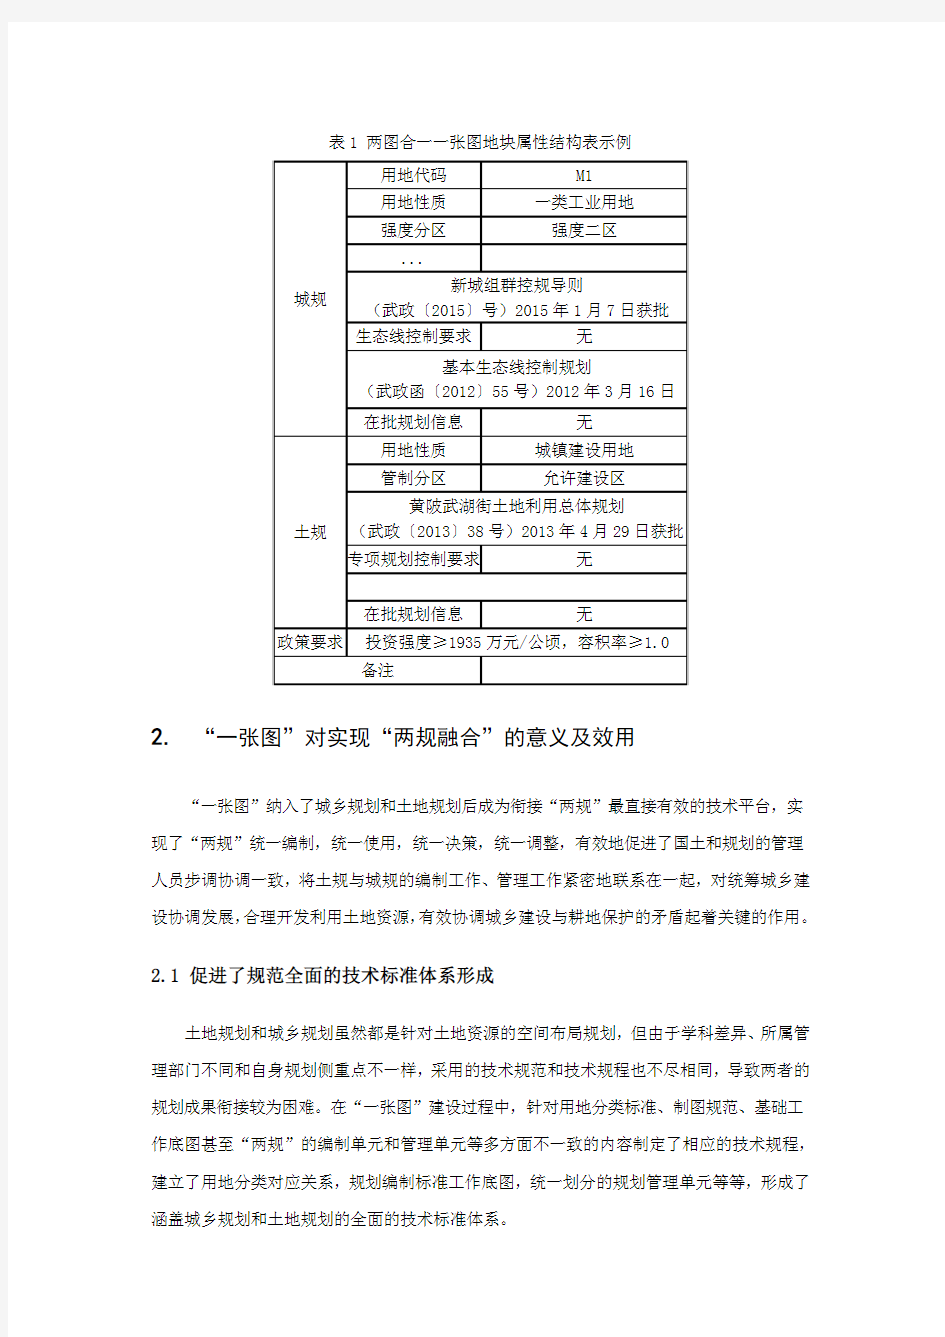 “两图合一”的一张图式管理机制建设探索——以武汉市规划管理用图为例